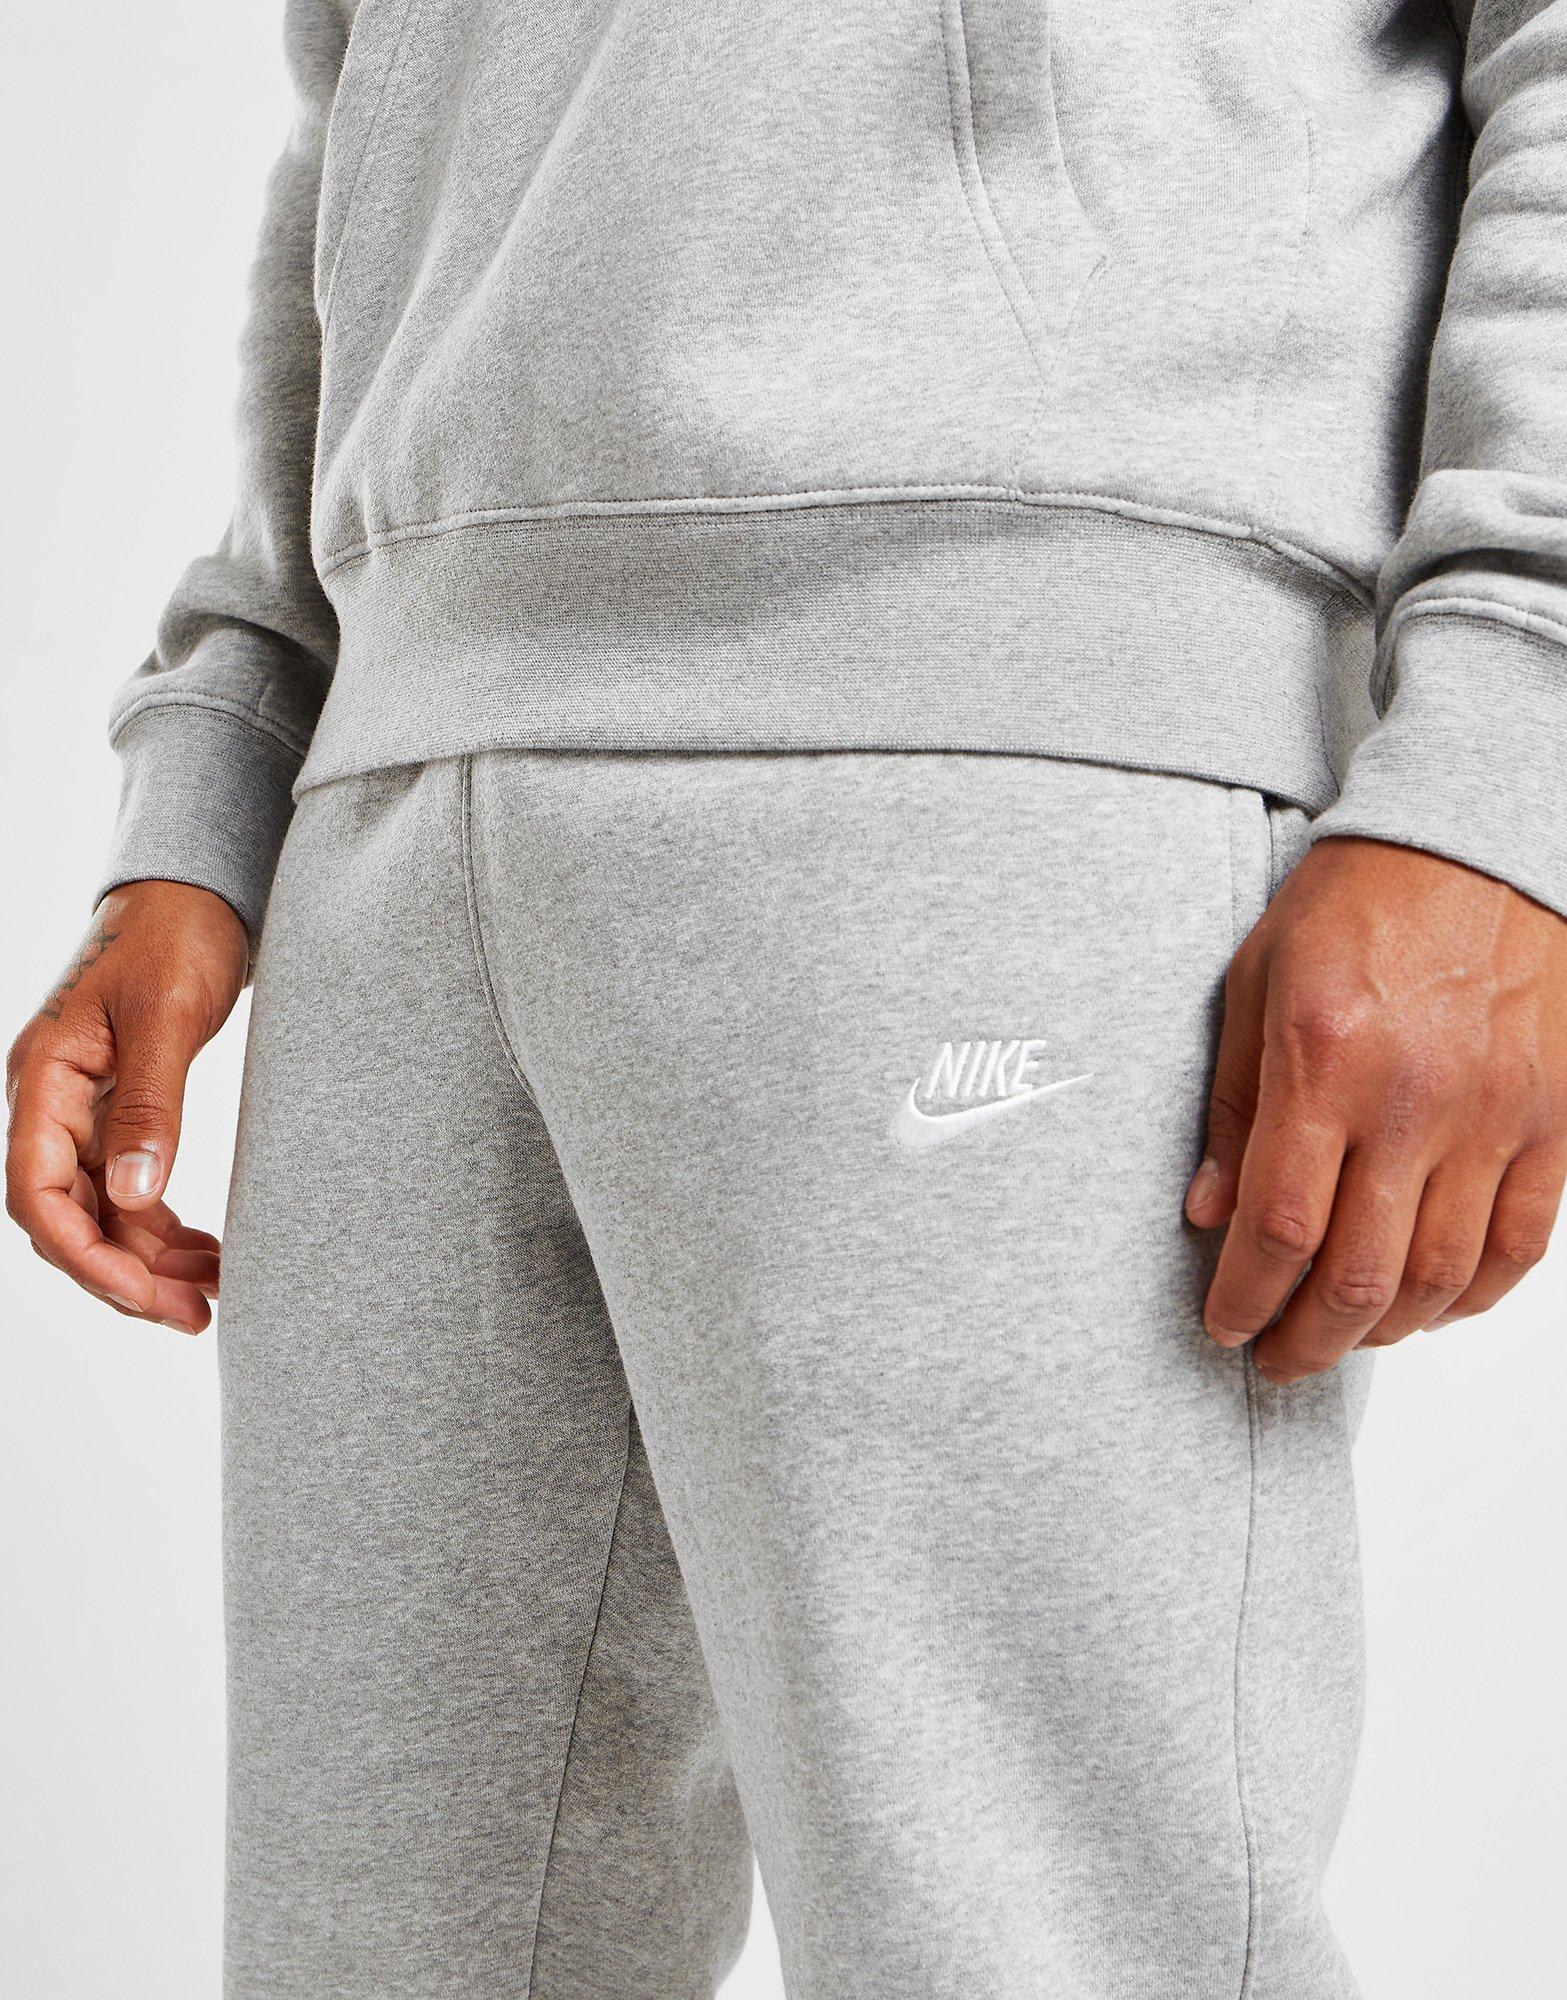 trommel Slepen vergeven Grey Nike Foundation Cuffed Fleece Pants - JD Sports